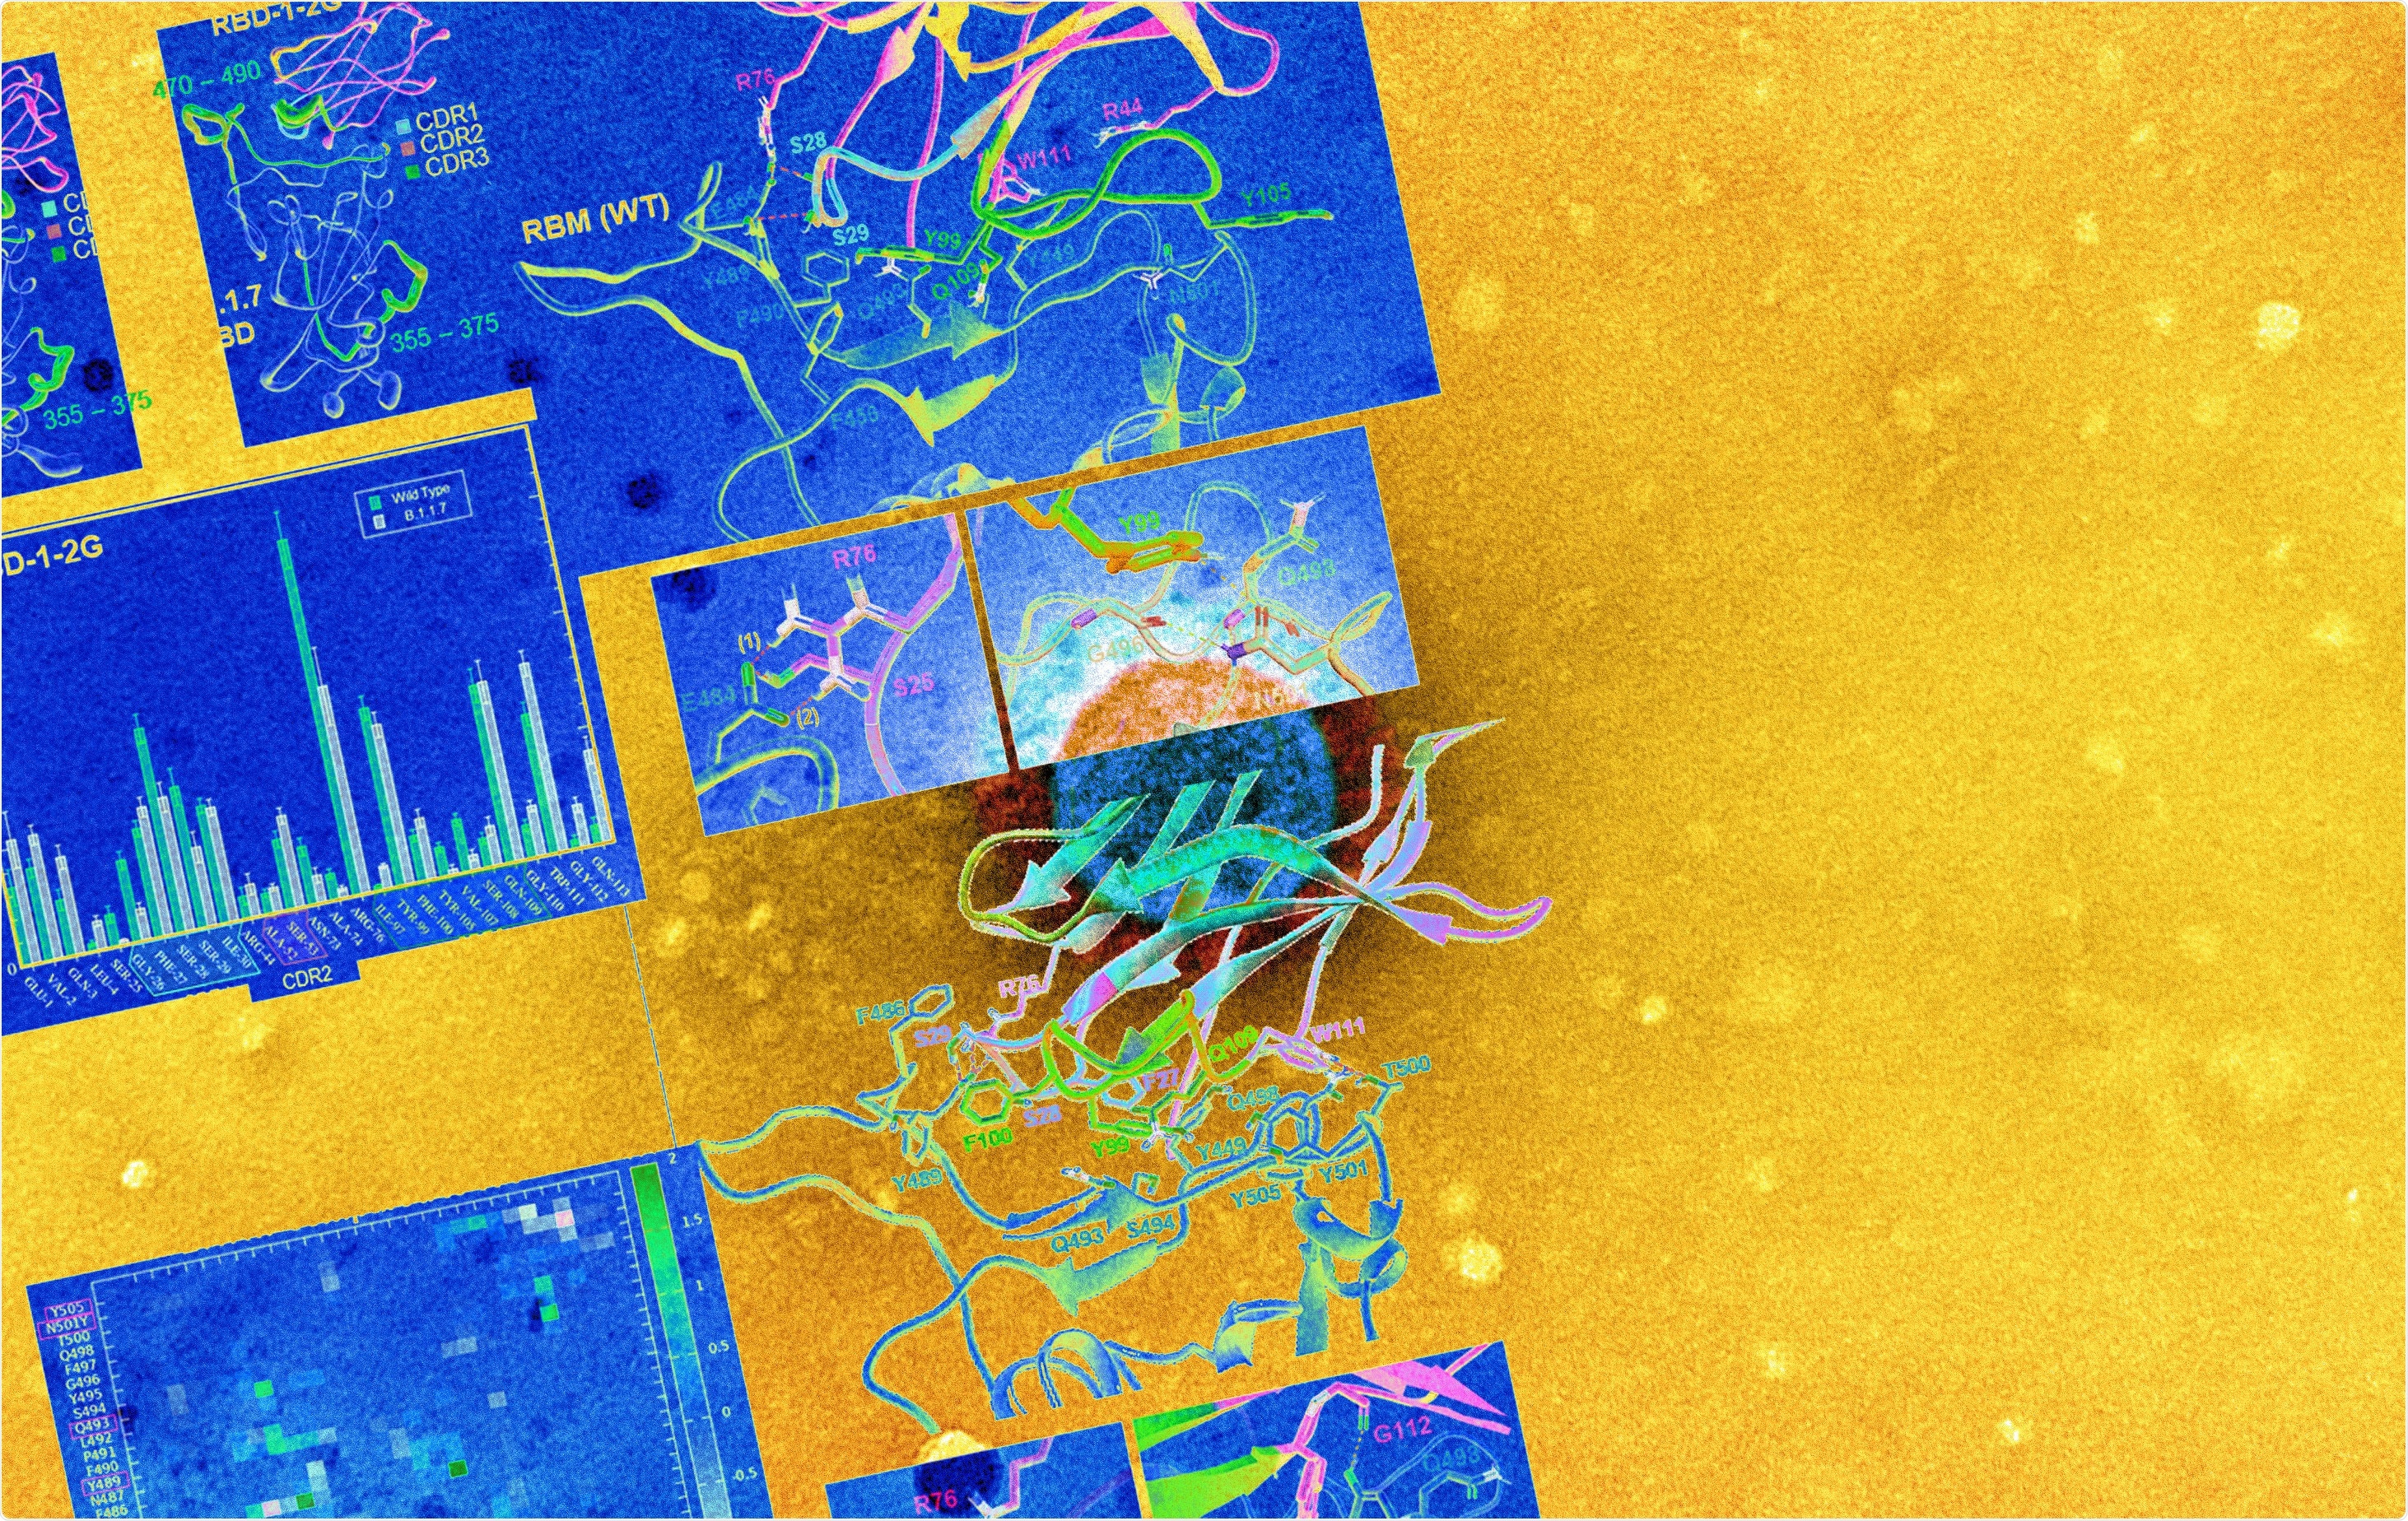 Estudio: El RBD-1-2G nanobody humanizado tolera la mutación del pico N501Y para neutralizar SARS-CoV-2. Haber de imagen: NIAID